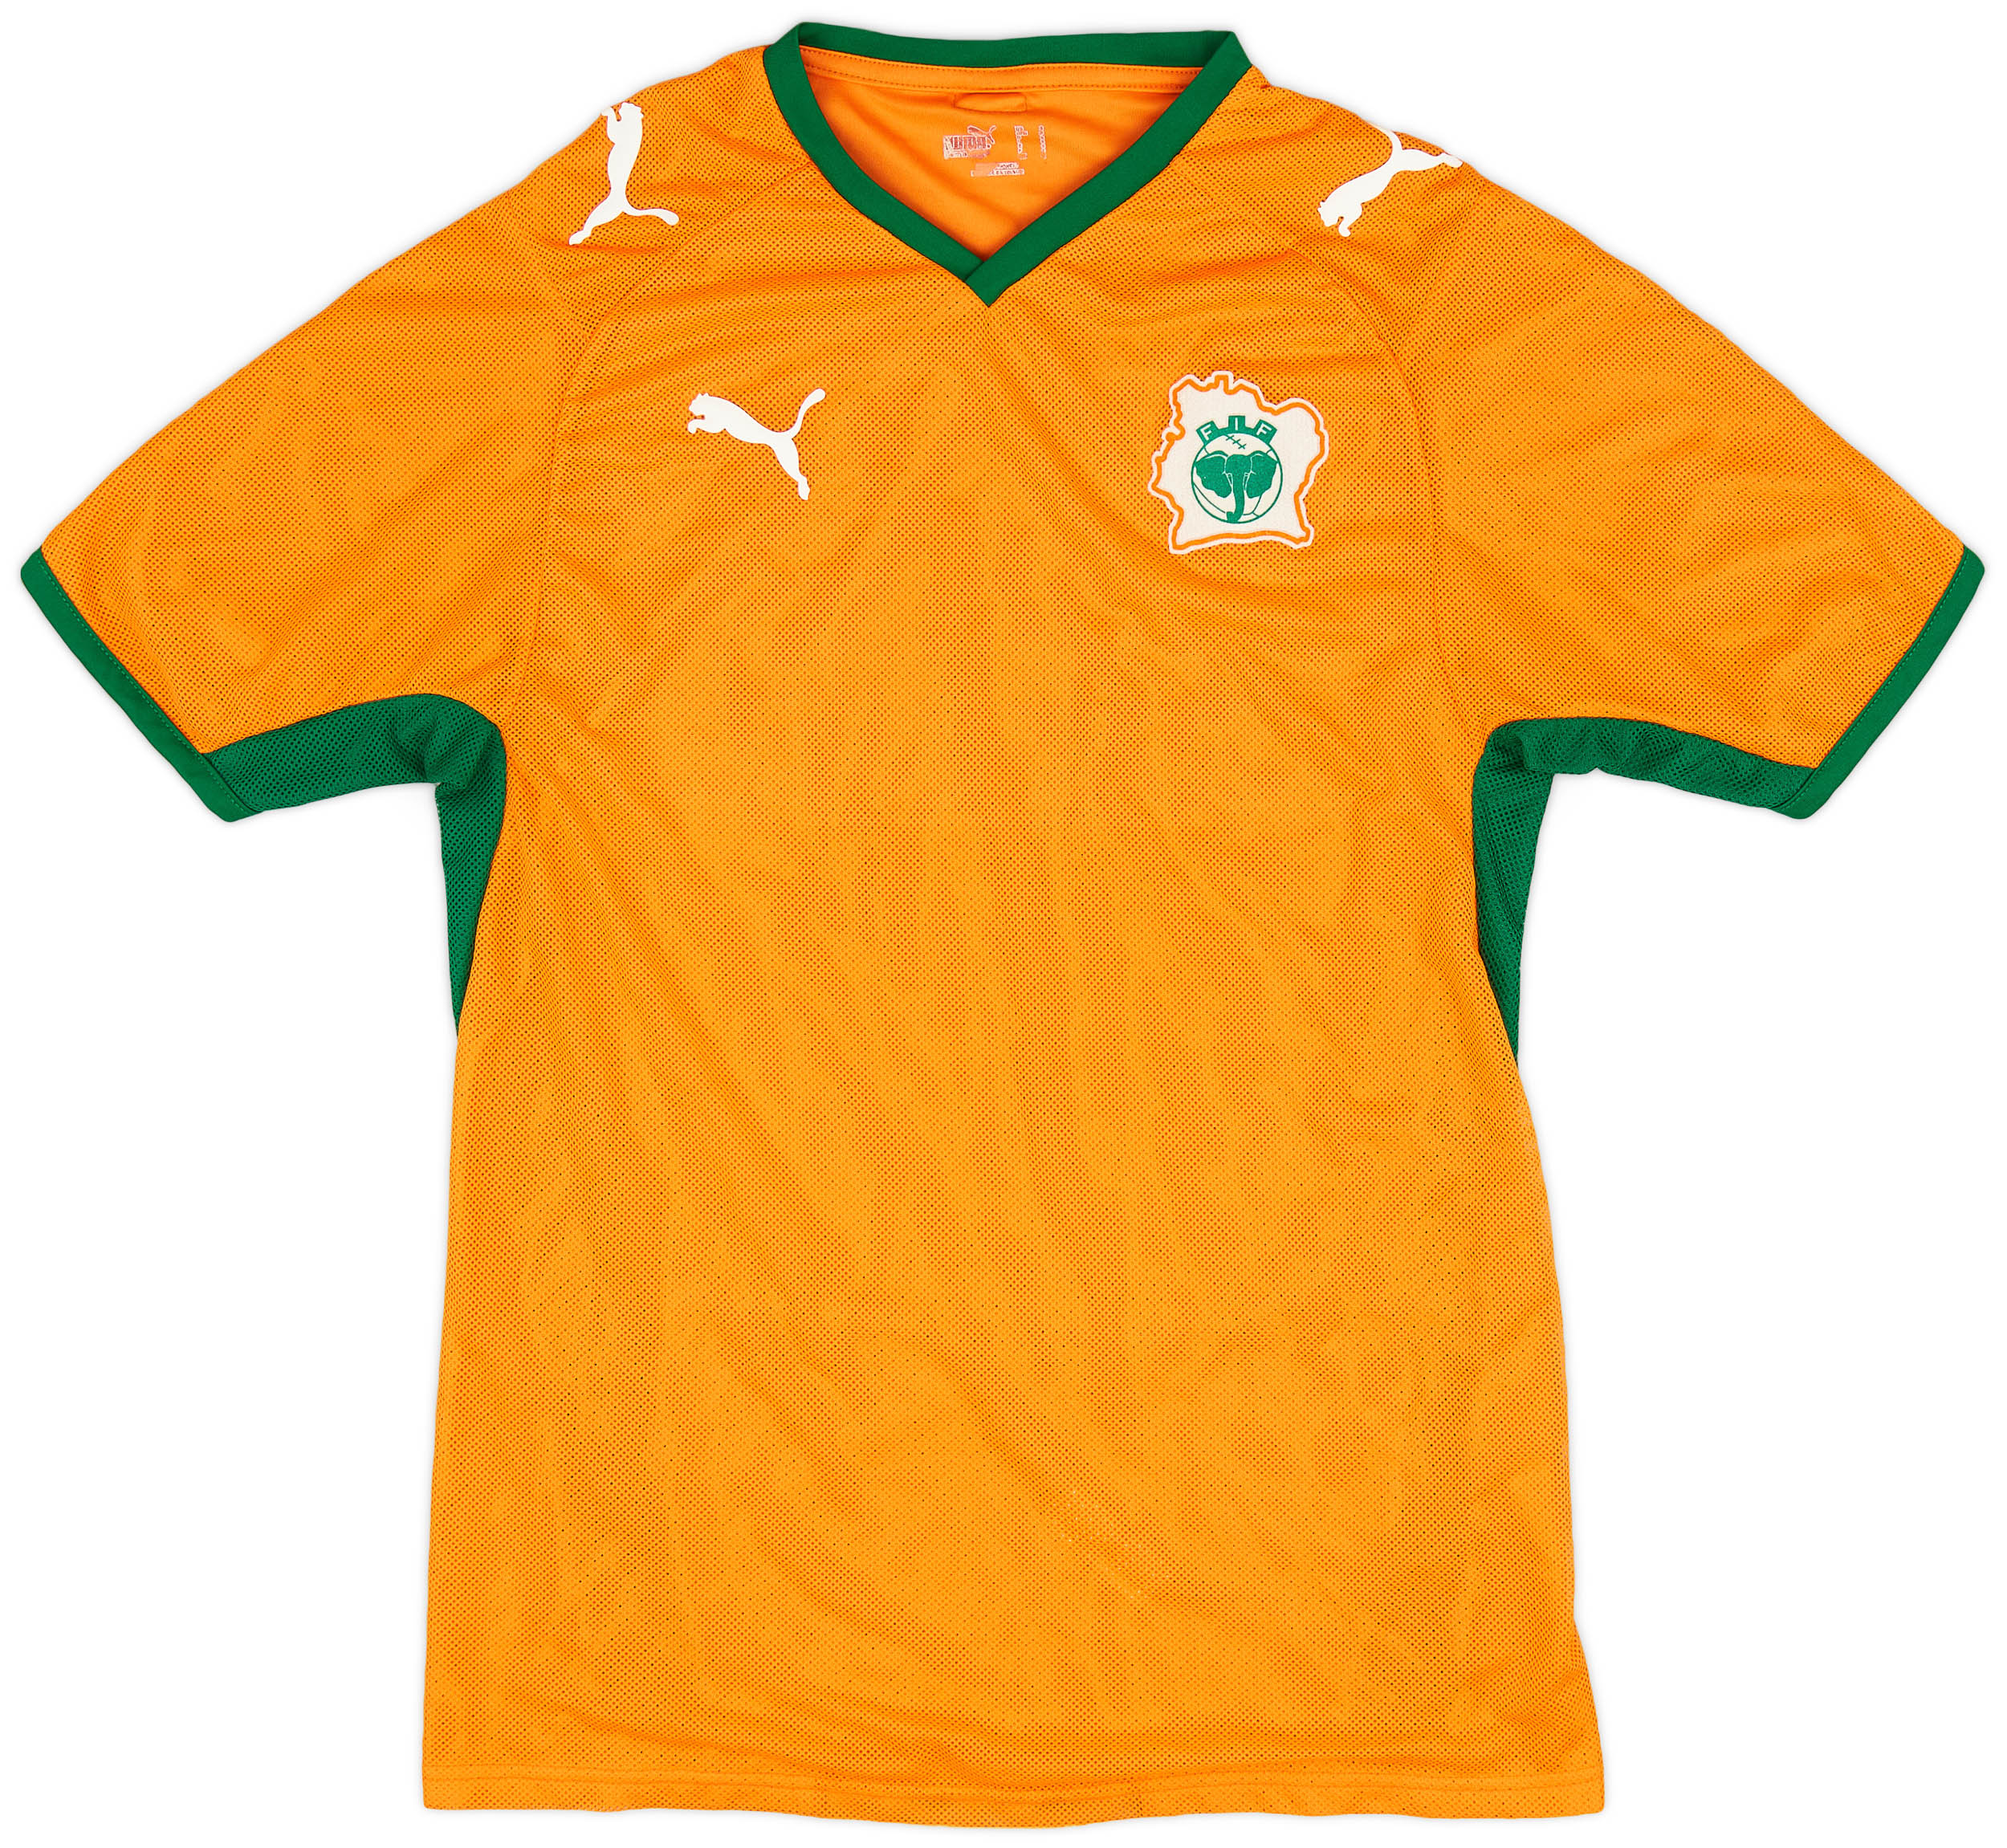 2008-09 Ivory Coast Home Shirt - 8/10 - ()